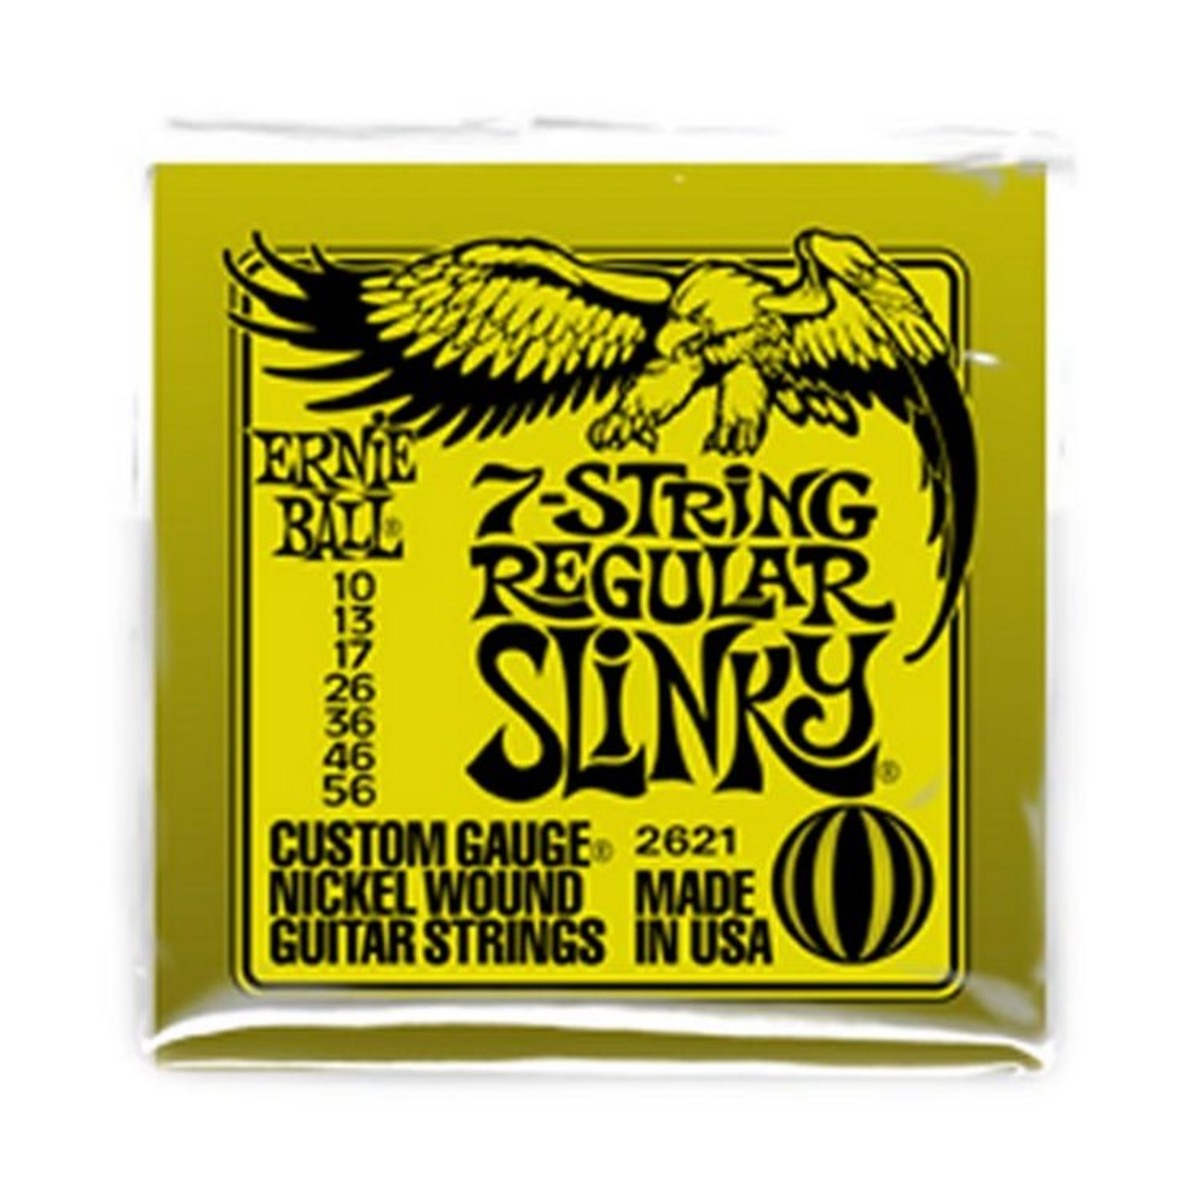 Ernie Ball Regular Slinky 7 String 10-56